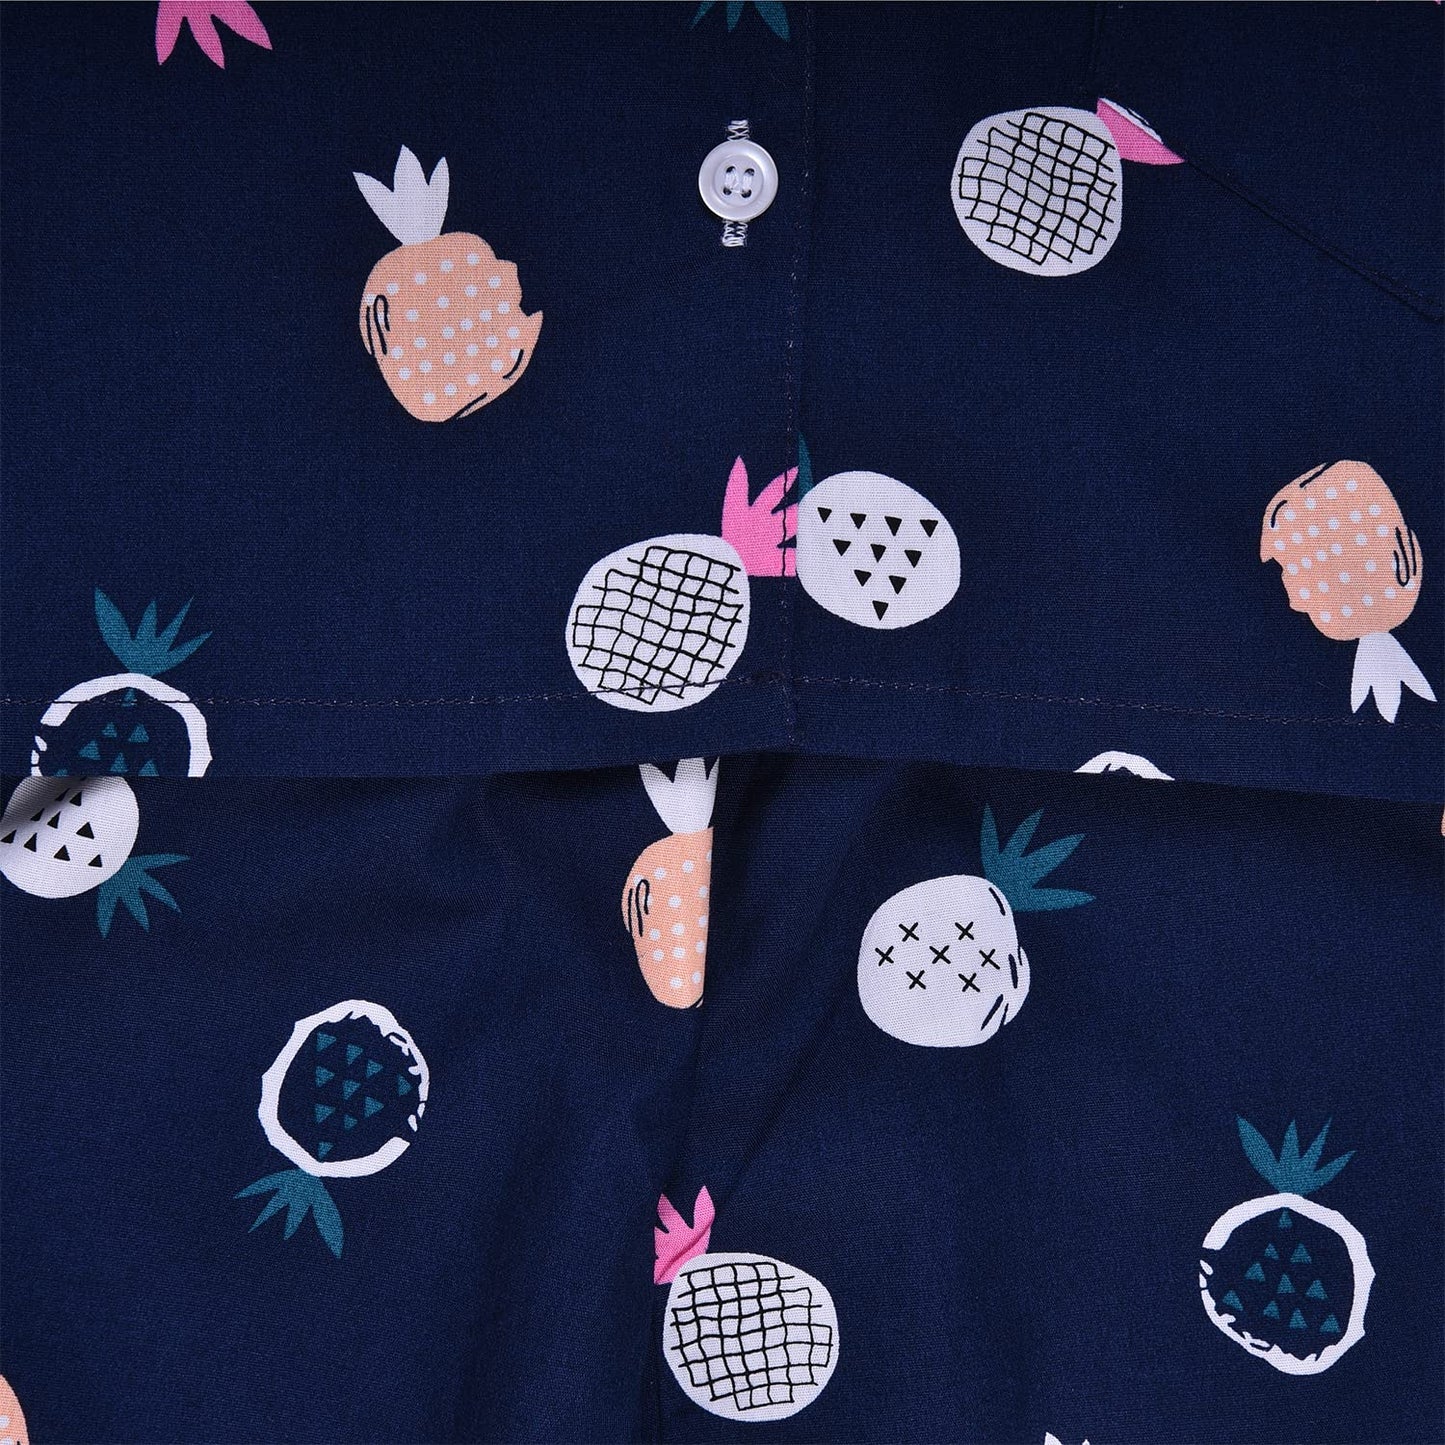 Wish Karo Cotton Printed Top & Bottom Pajama Set Night Dress for Boys & Girls-(ND31nb)